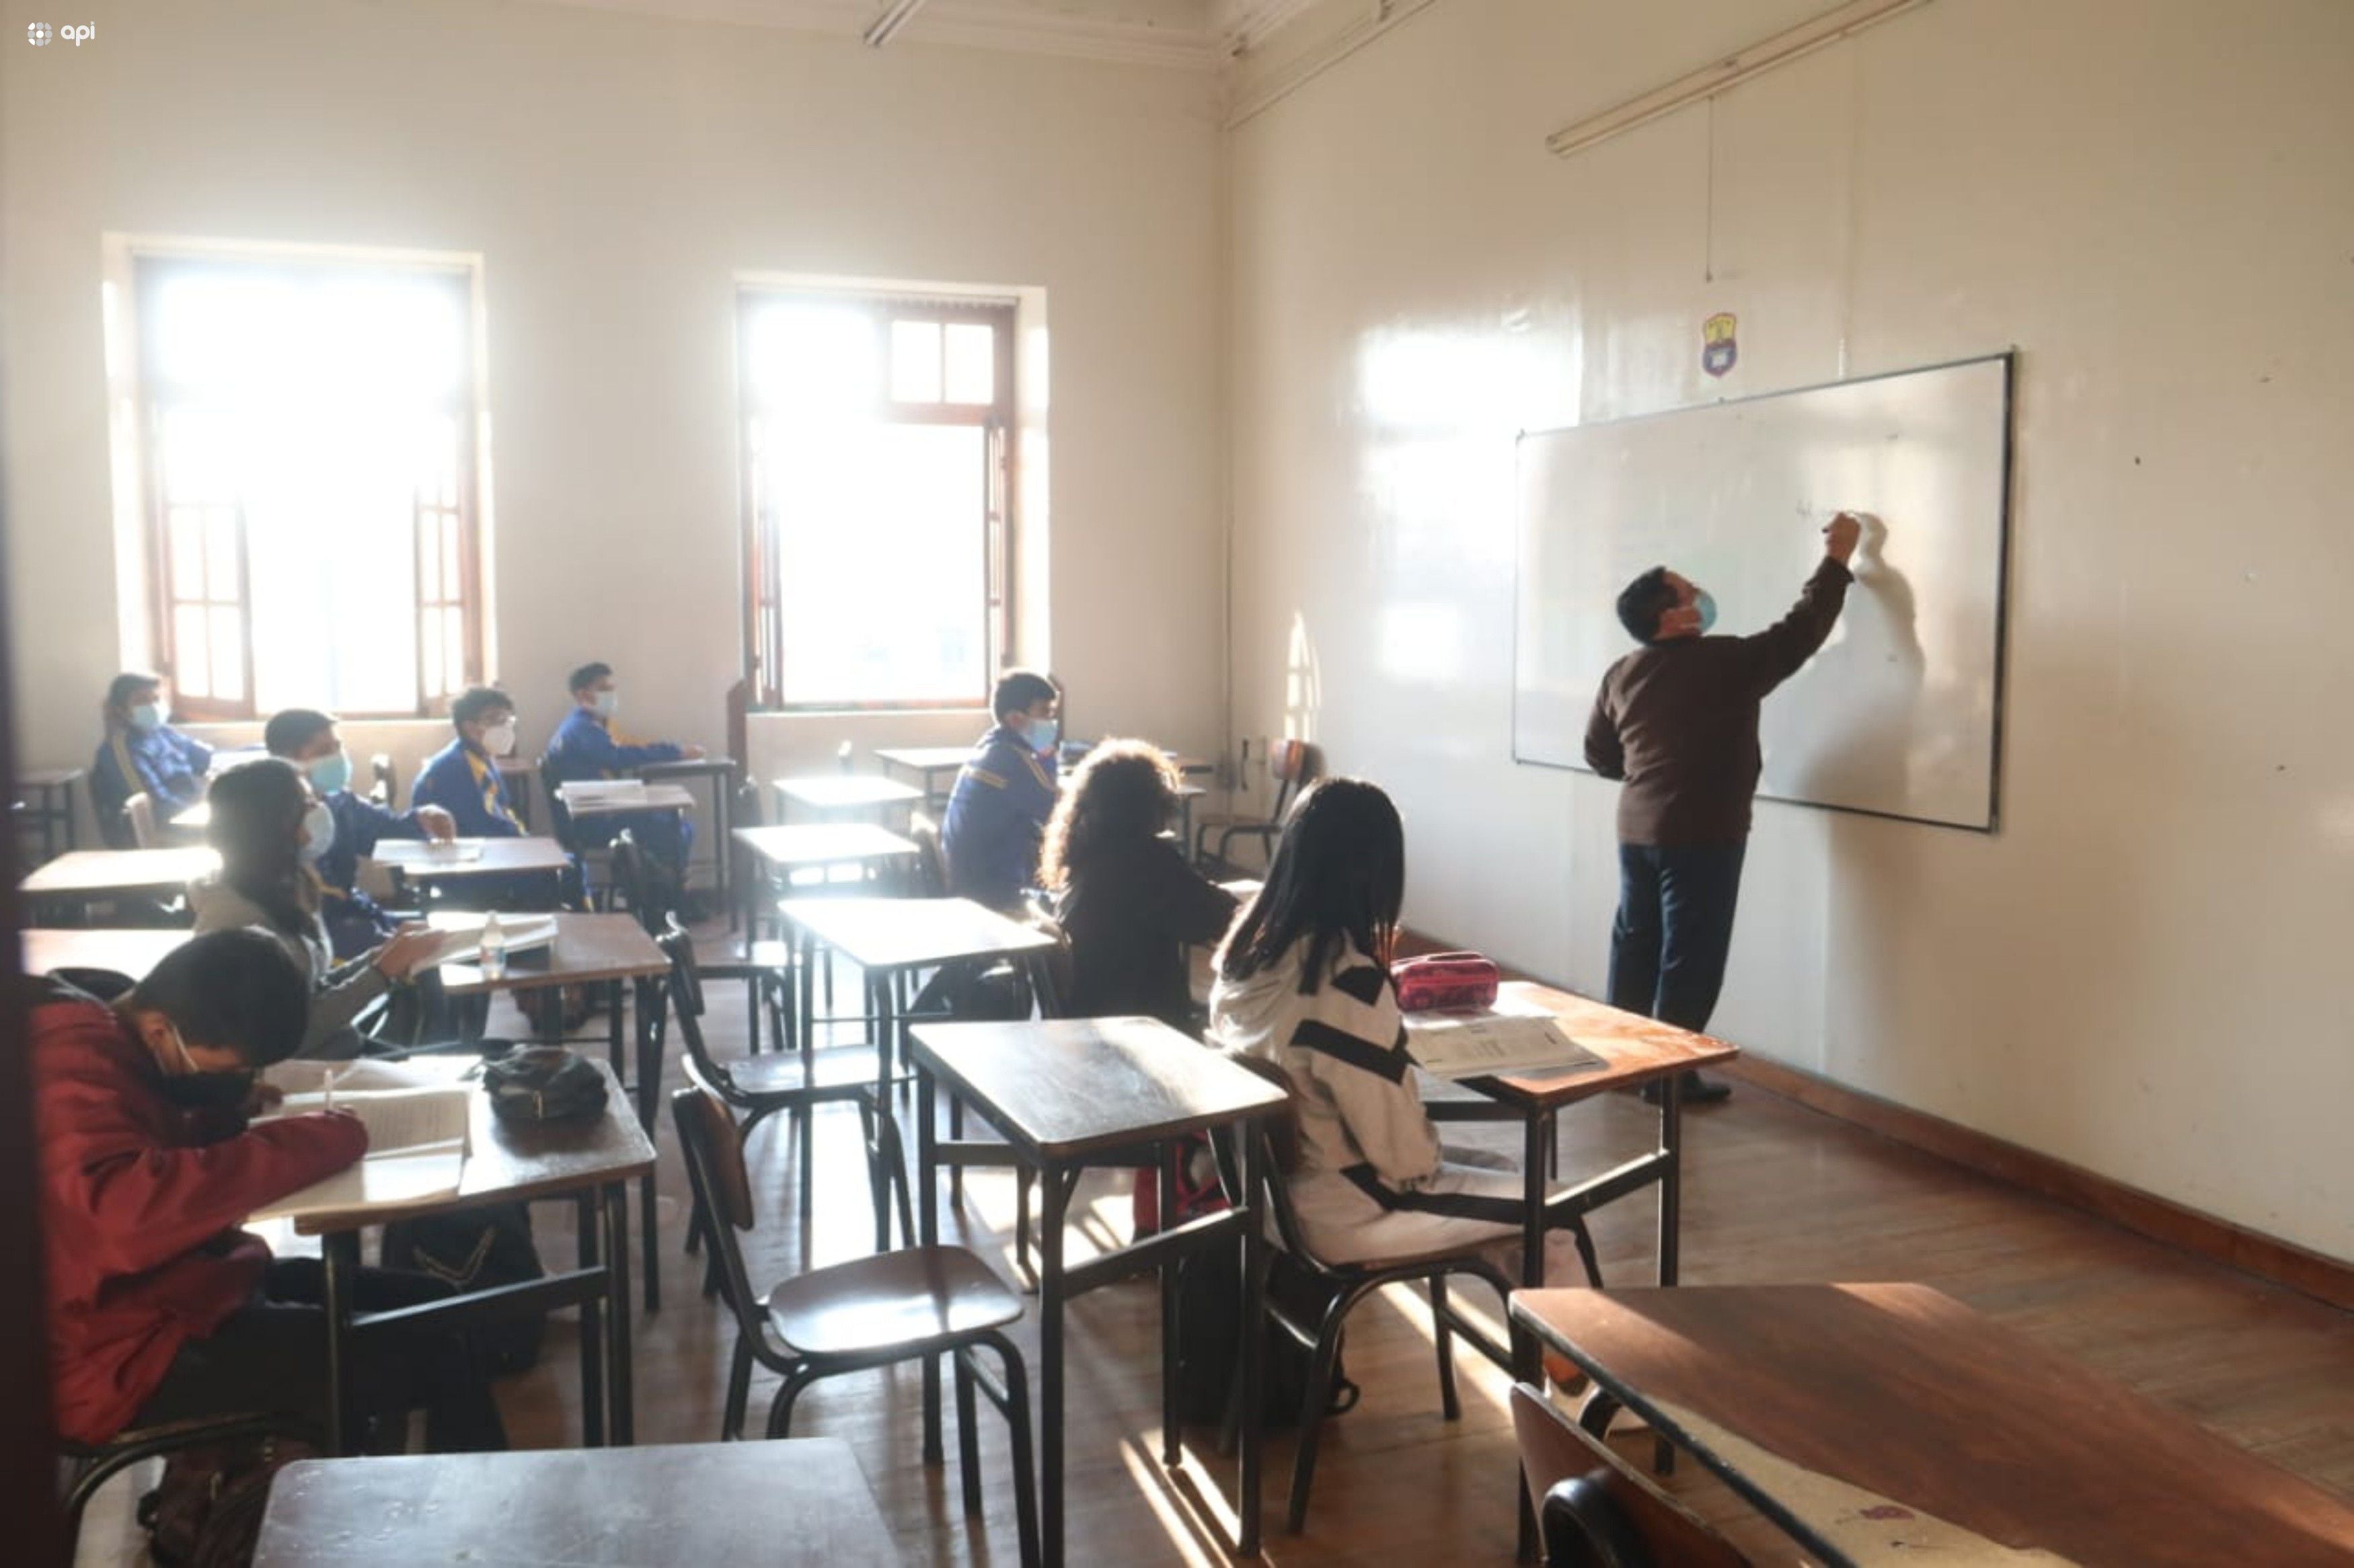 Tras presunto suicidio de estudiante, Ministerio de Educación investigará supuestos ‘acontecimientos irregulares’ en colegio de Quito